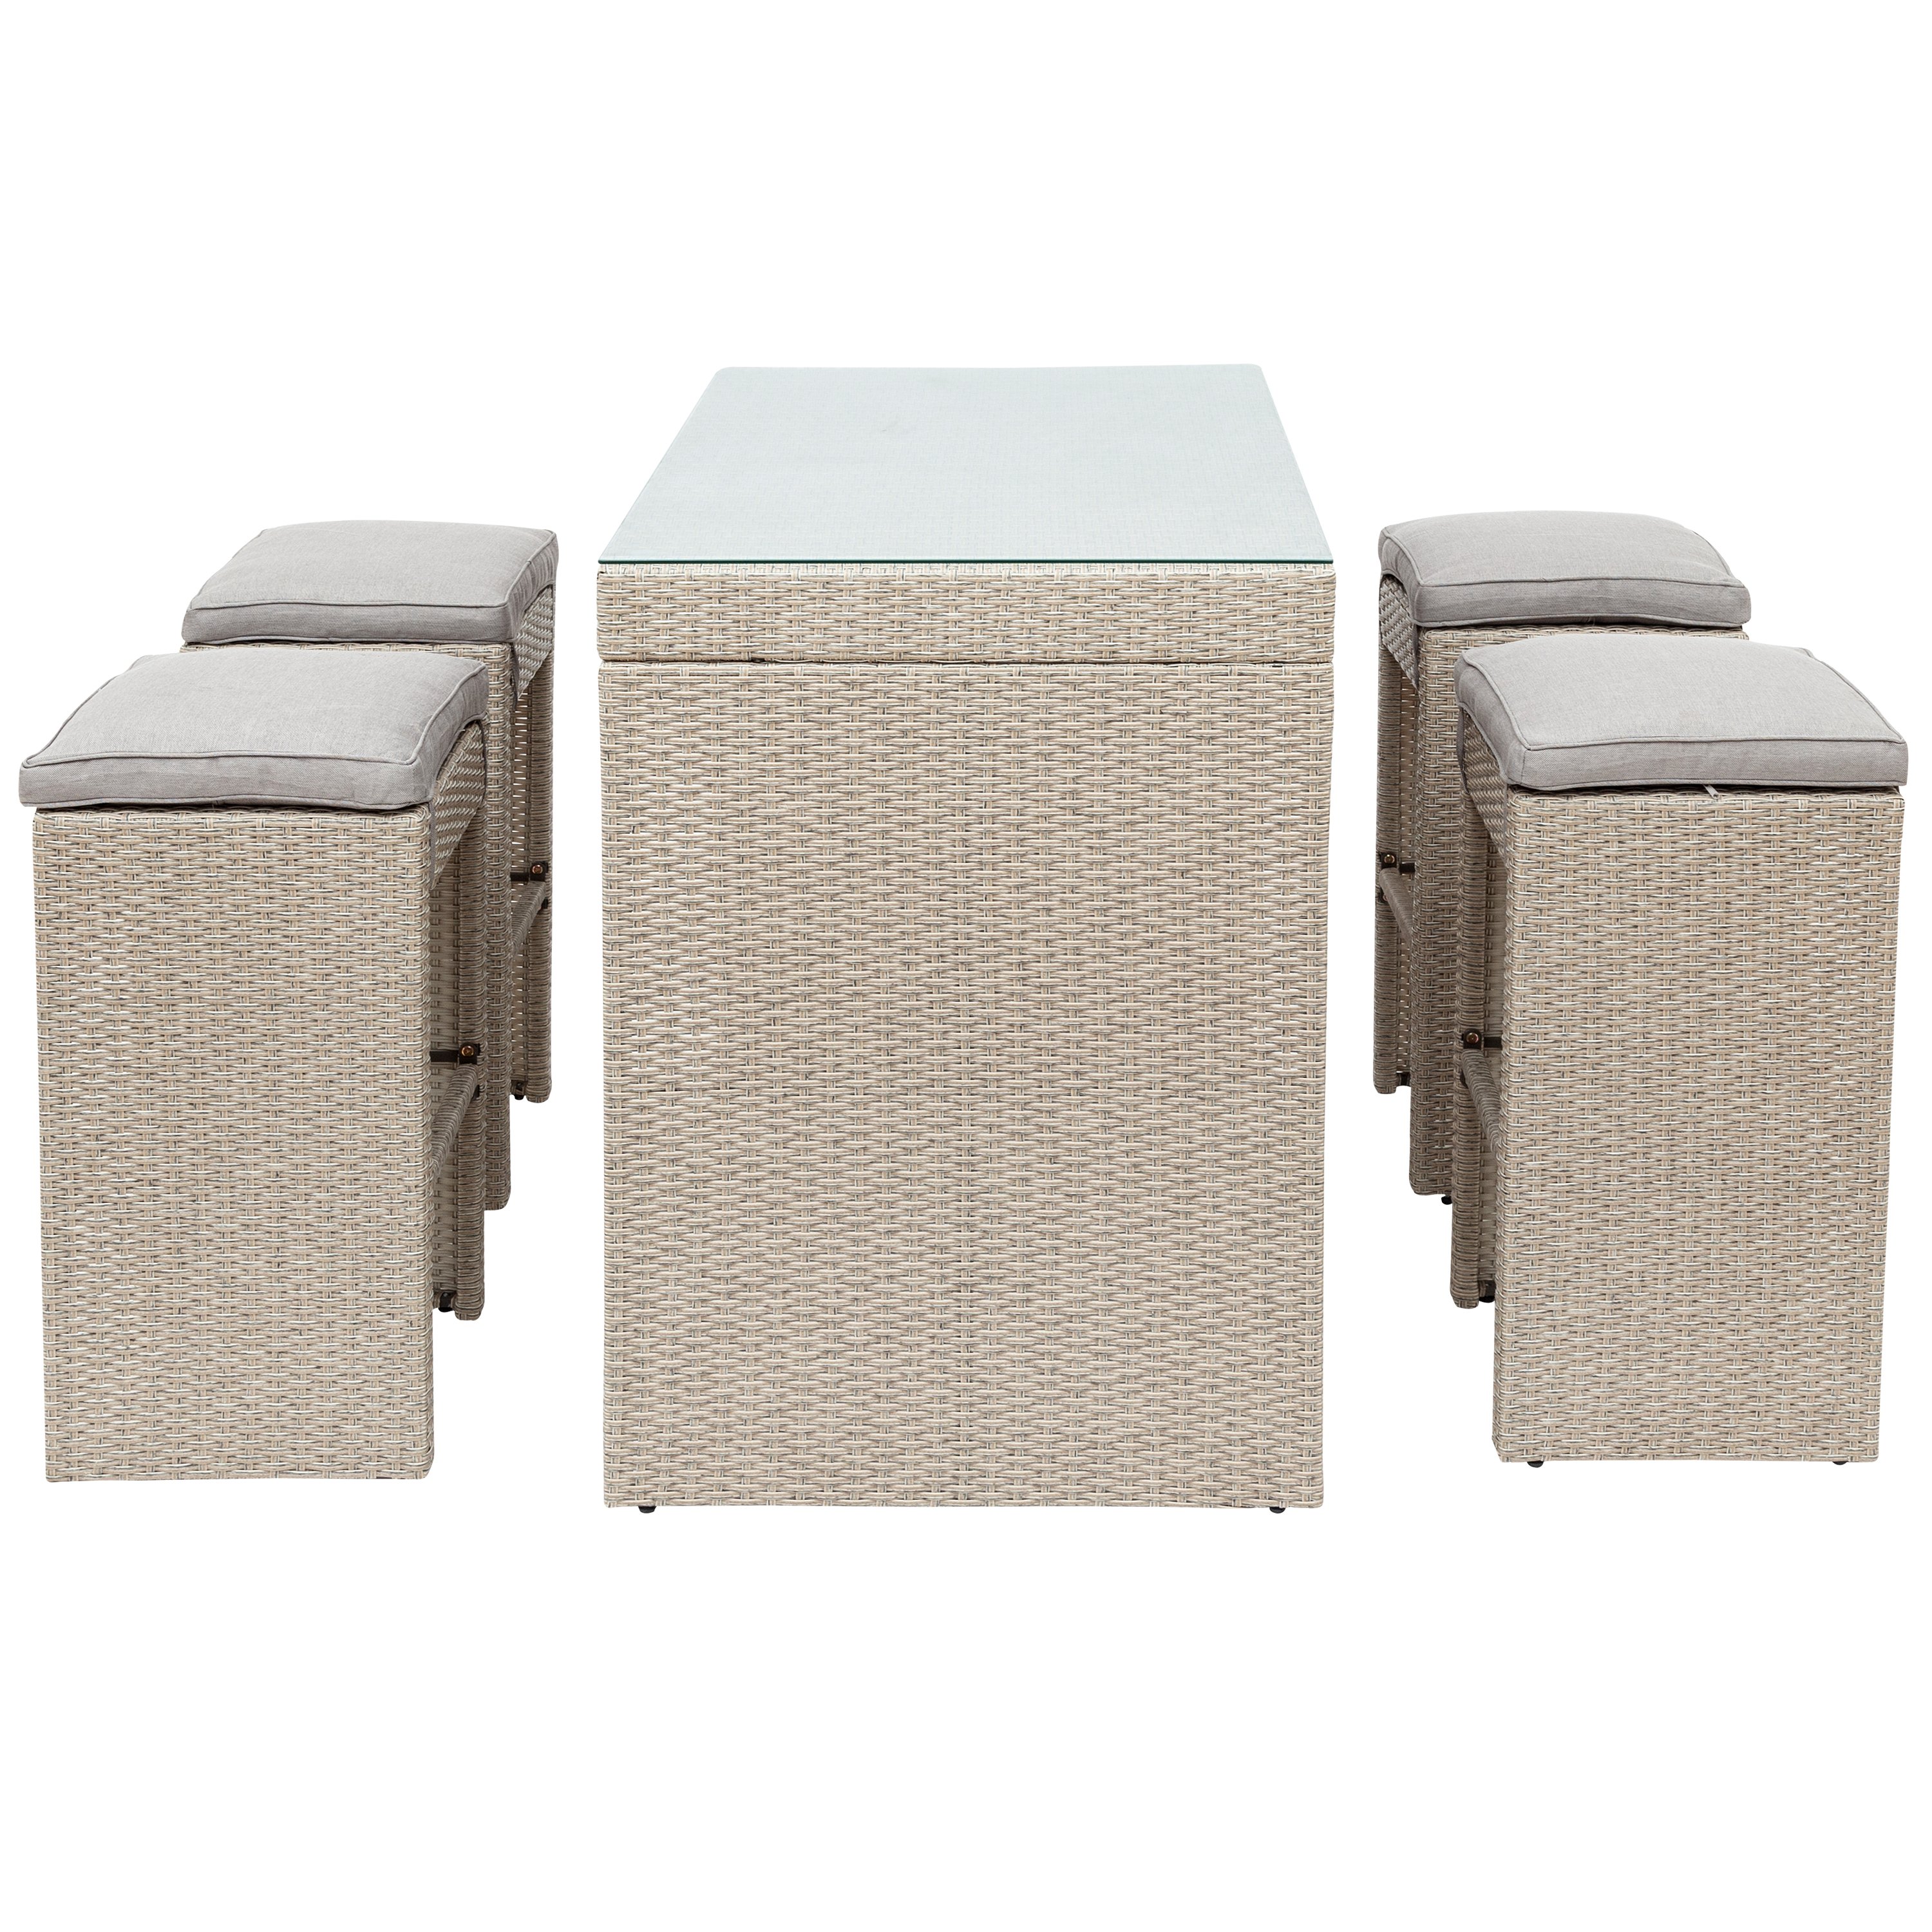 5-piece Rattan Outdoor Patio Furniture Set Bar Dining Table Set with 4 Stools-CASAINC